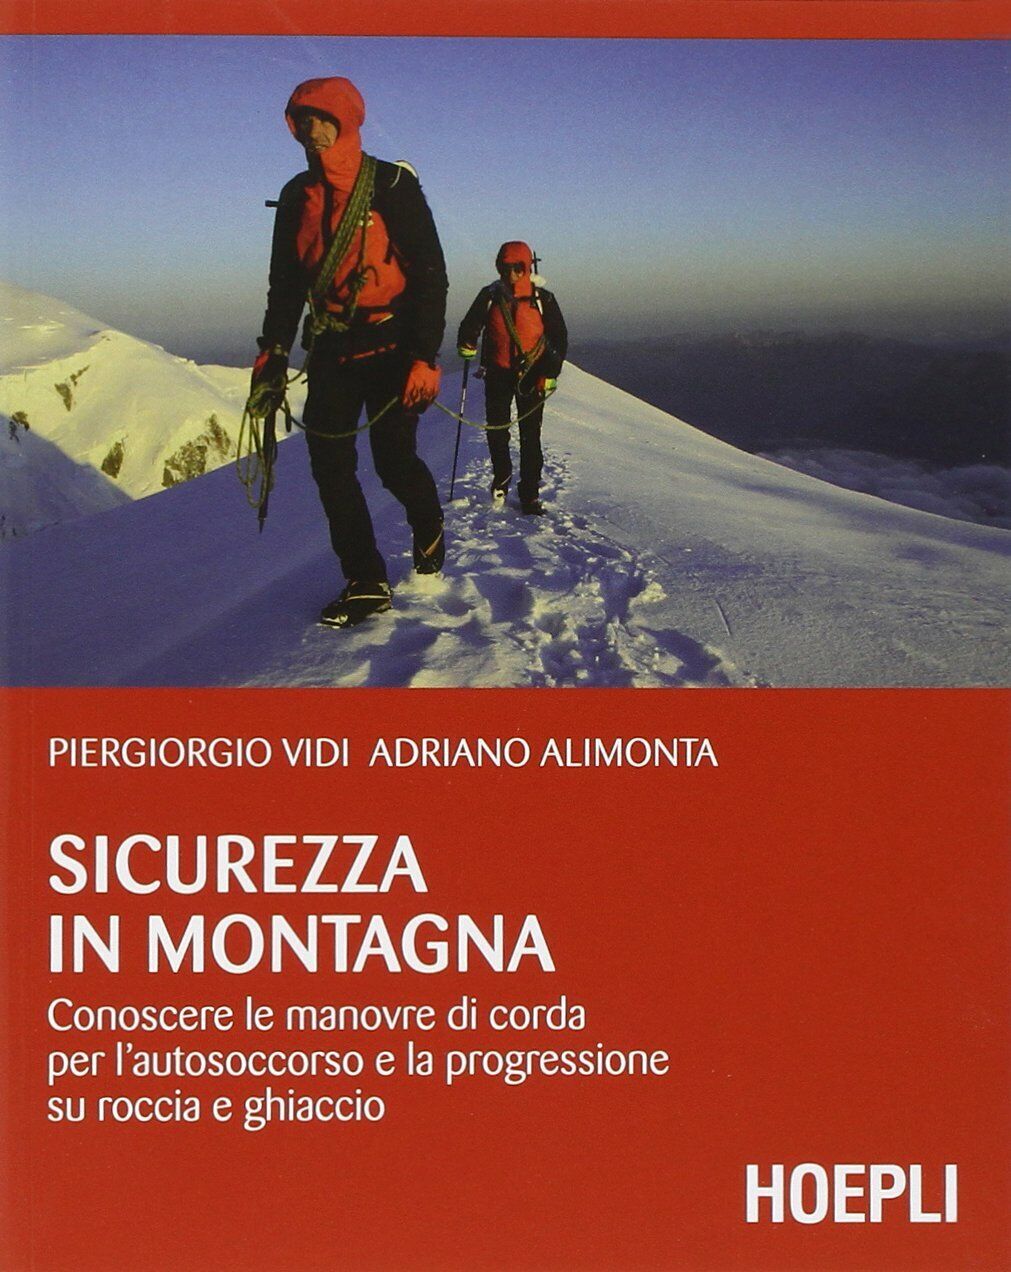 sicurezza in montagna -  Piergiorgio Vidi, Adriano Alimonta - hoepli, 2014